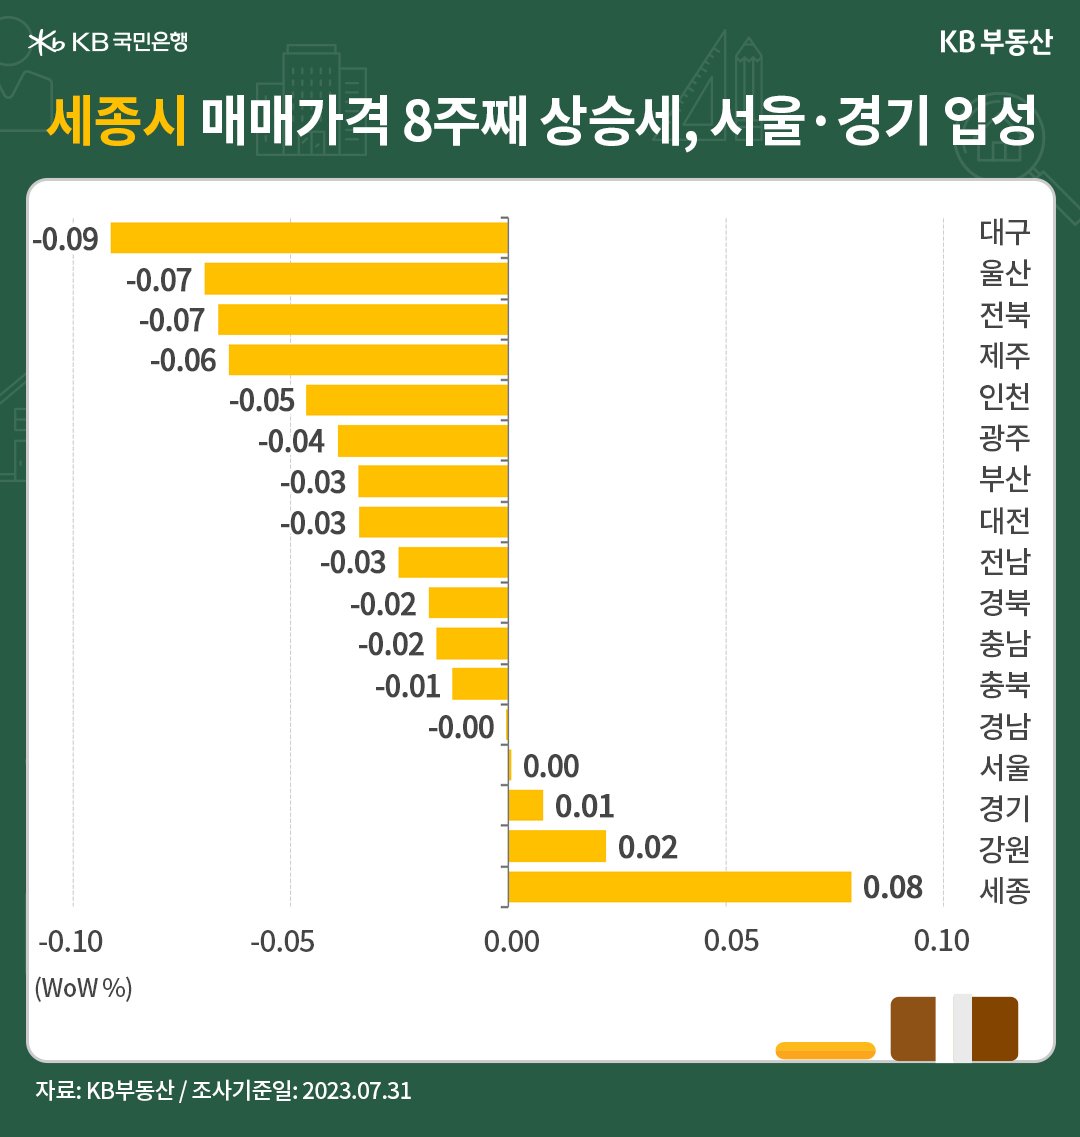 세종시의 매매가격이 8주째 상승세를 보이고, 서울과 경기가 상승권에 입성함을 나타내는 그래프, 서울이 2022년 7월 이후 53주만에 하락세에서 벗어났으며, 경기도 또한 상승세를 유지하며 0.01%의 상승률을 보임.